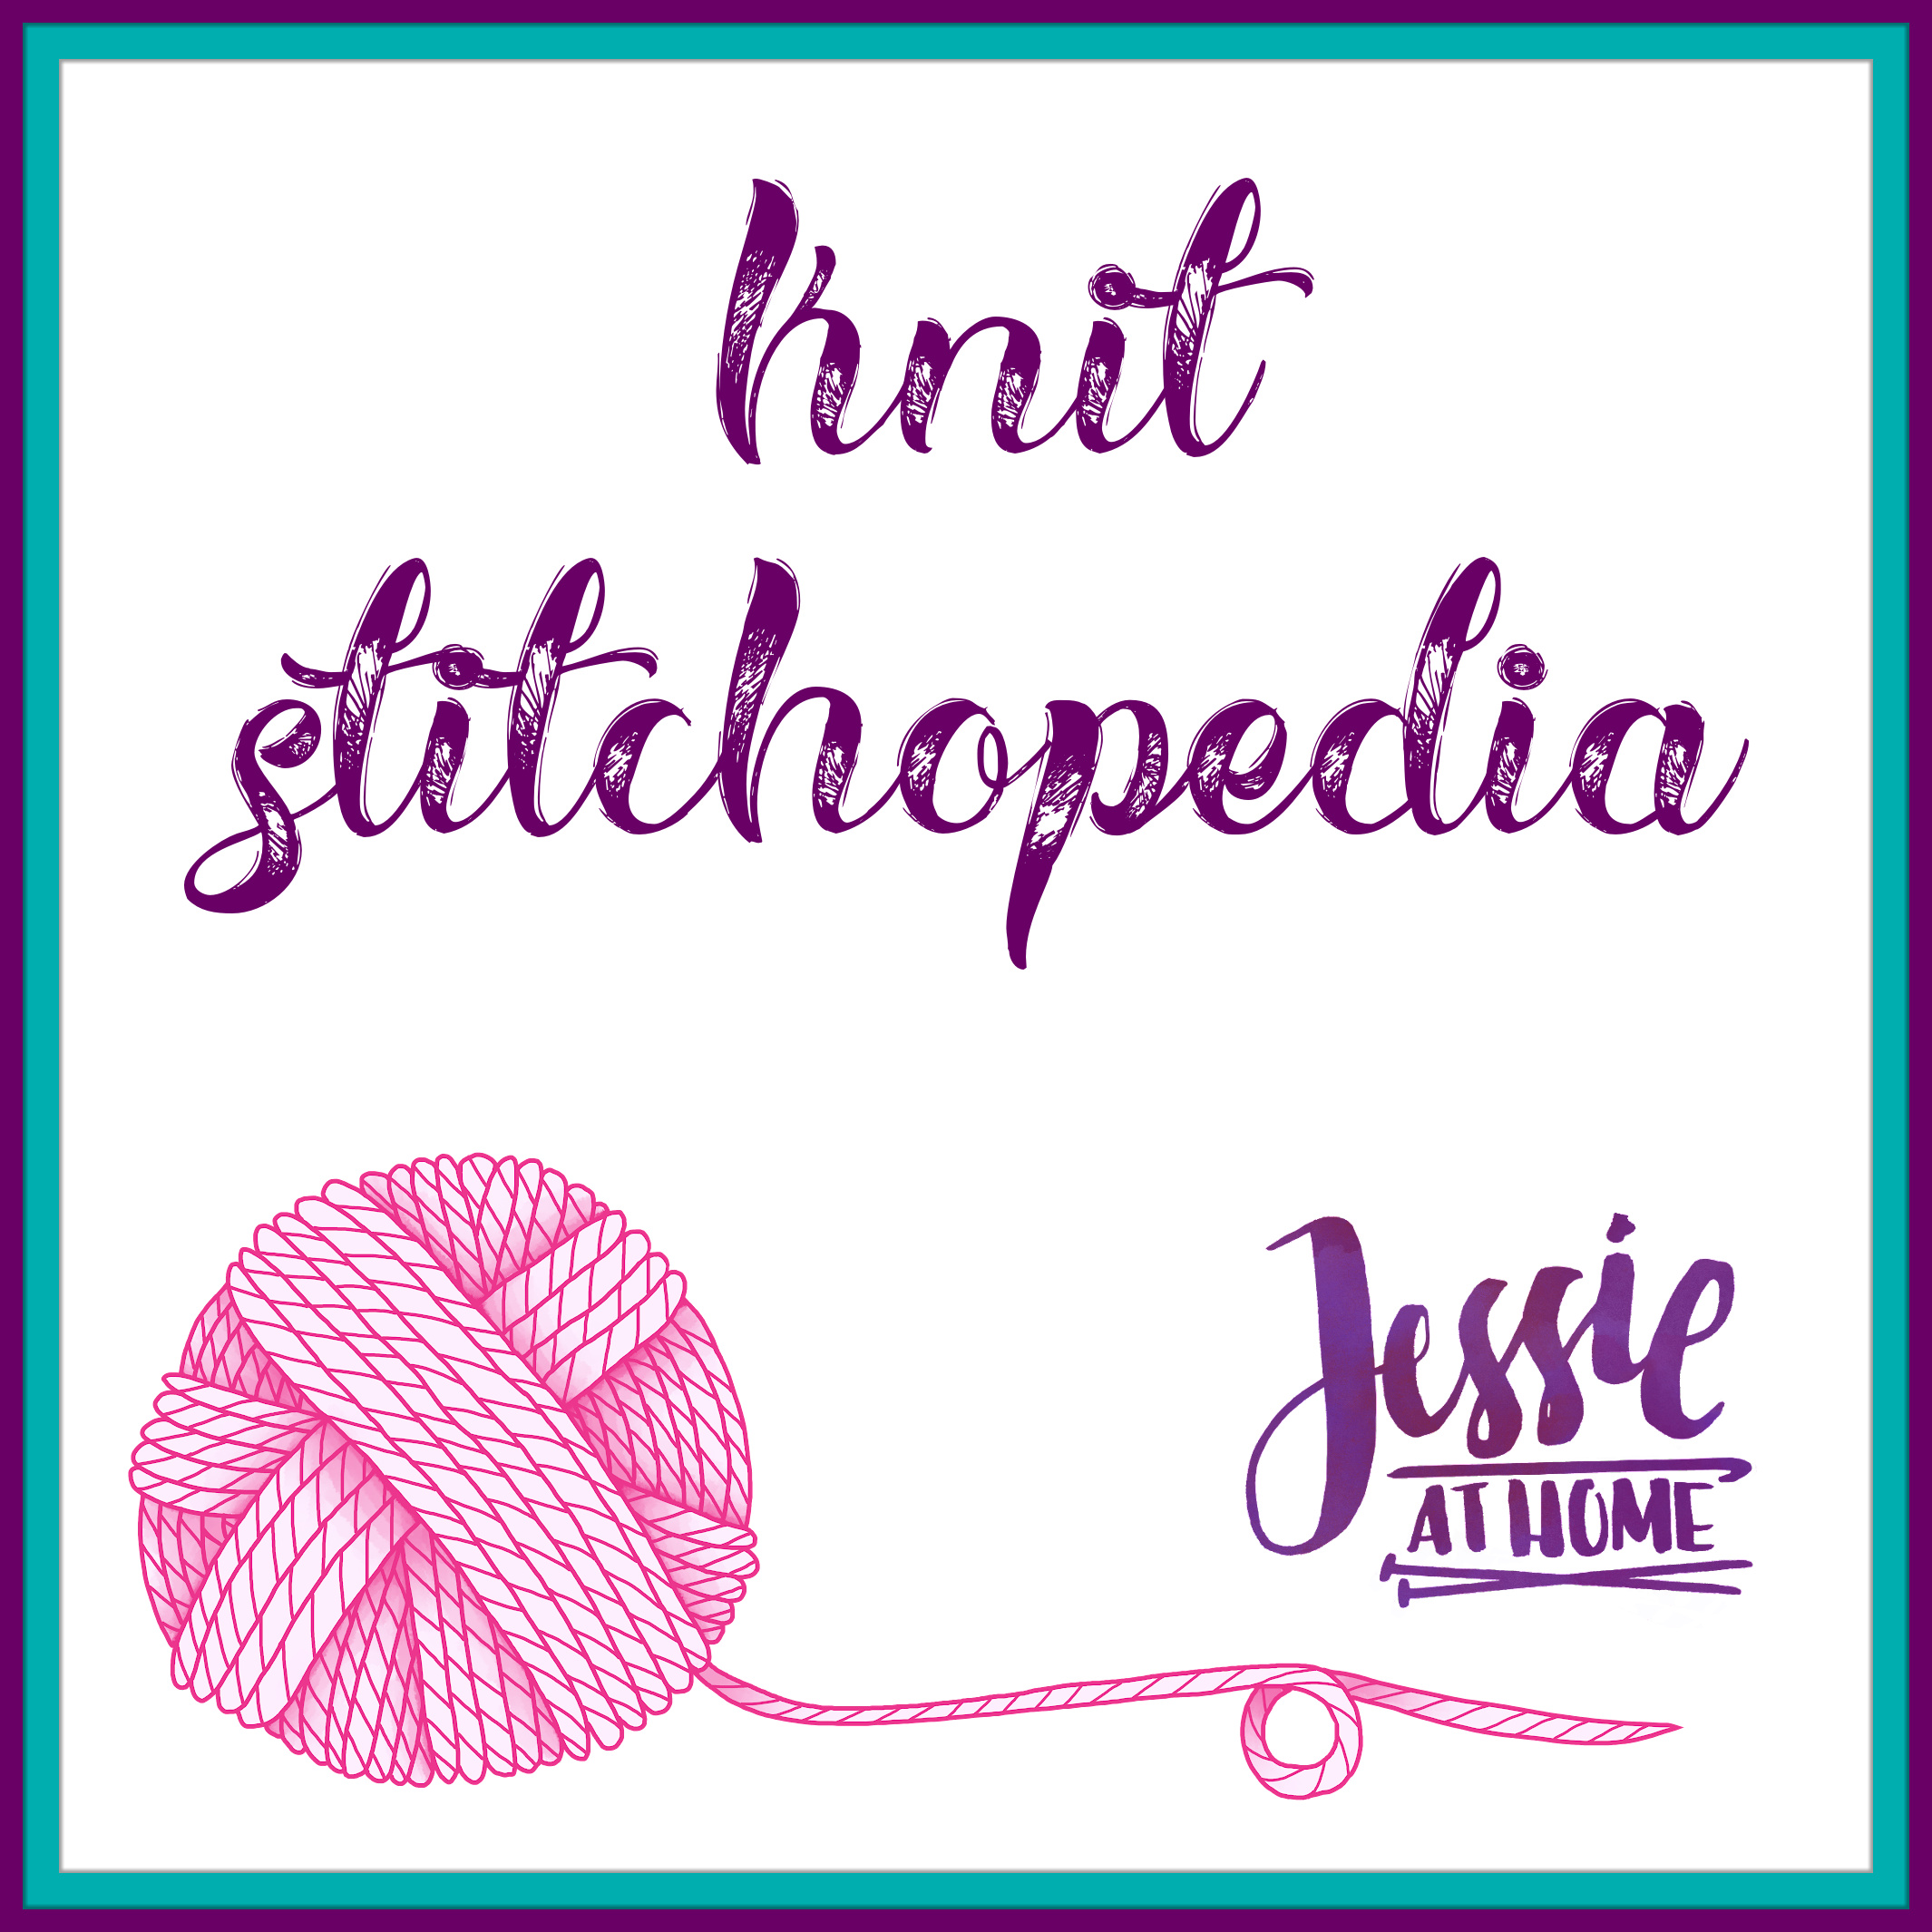 Knit Stitchopedia Menu on Jessie At Home